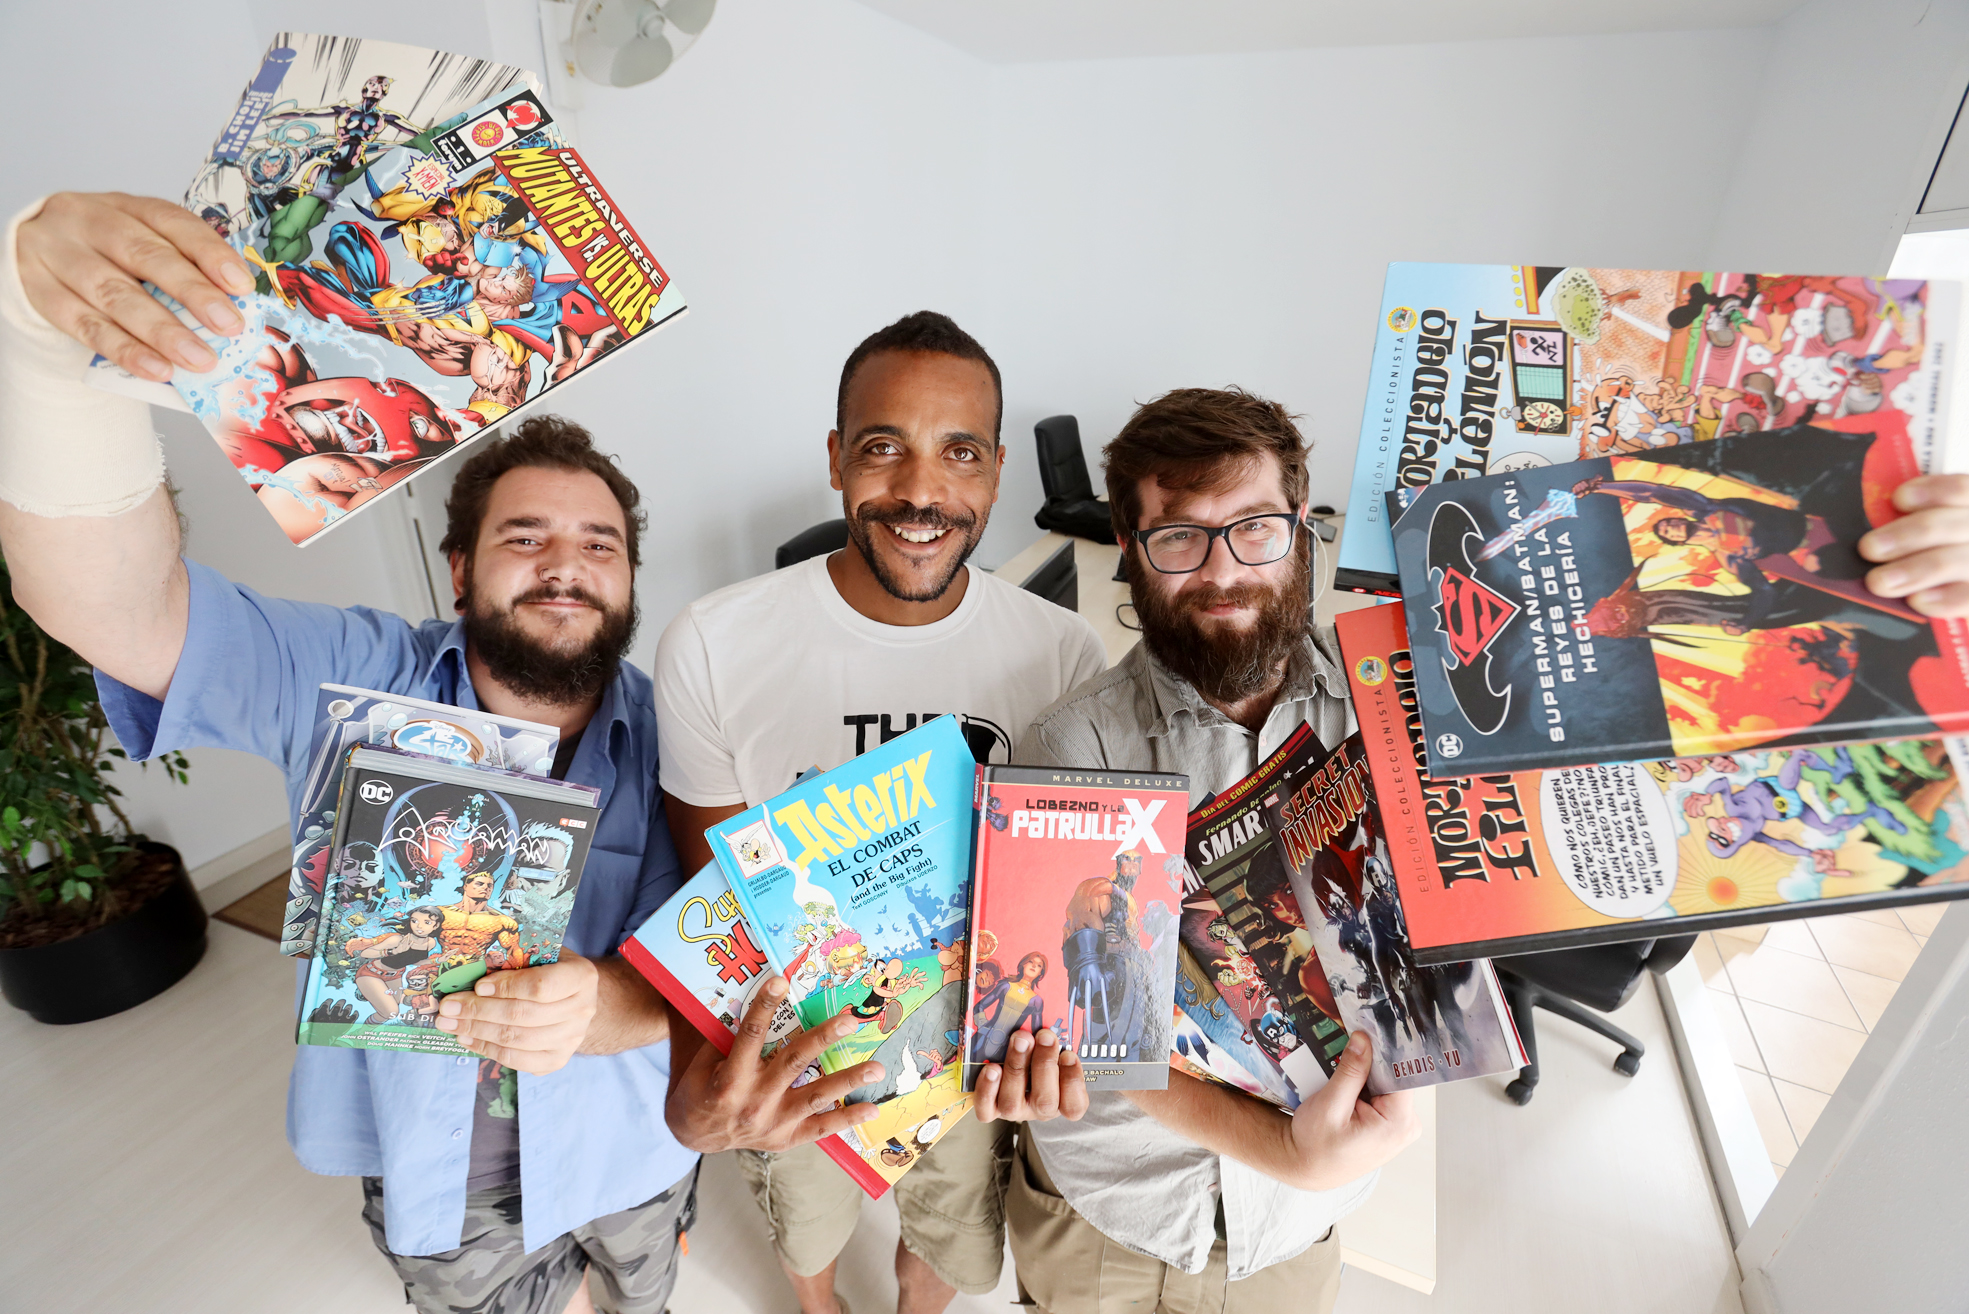 Pau Camps, Isma Jiménez i Adrià Cobos, fundadors de Grafreak, amb alguns dels còmics que han recollit